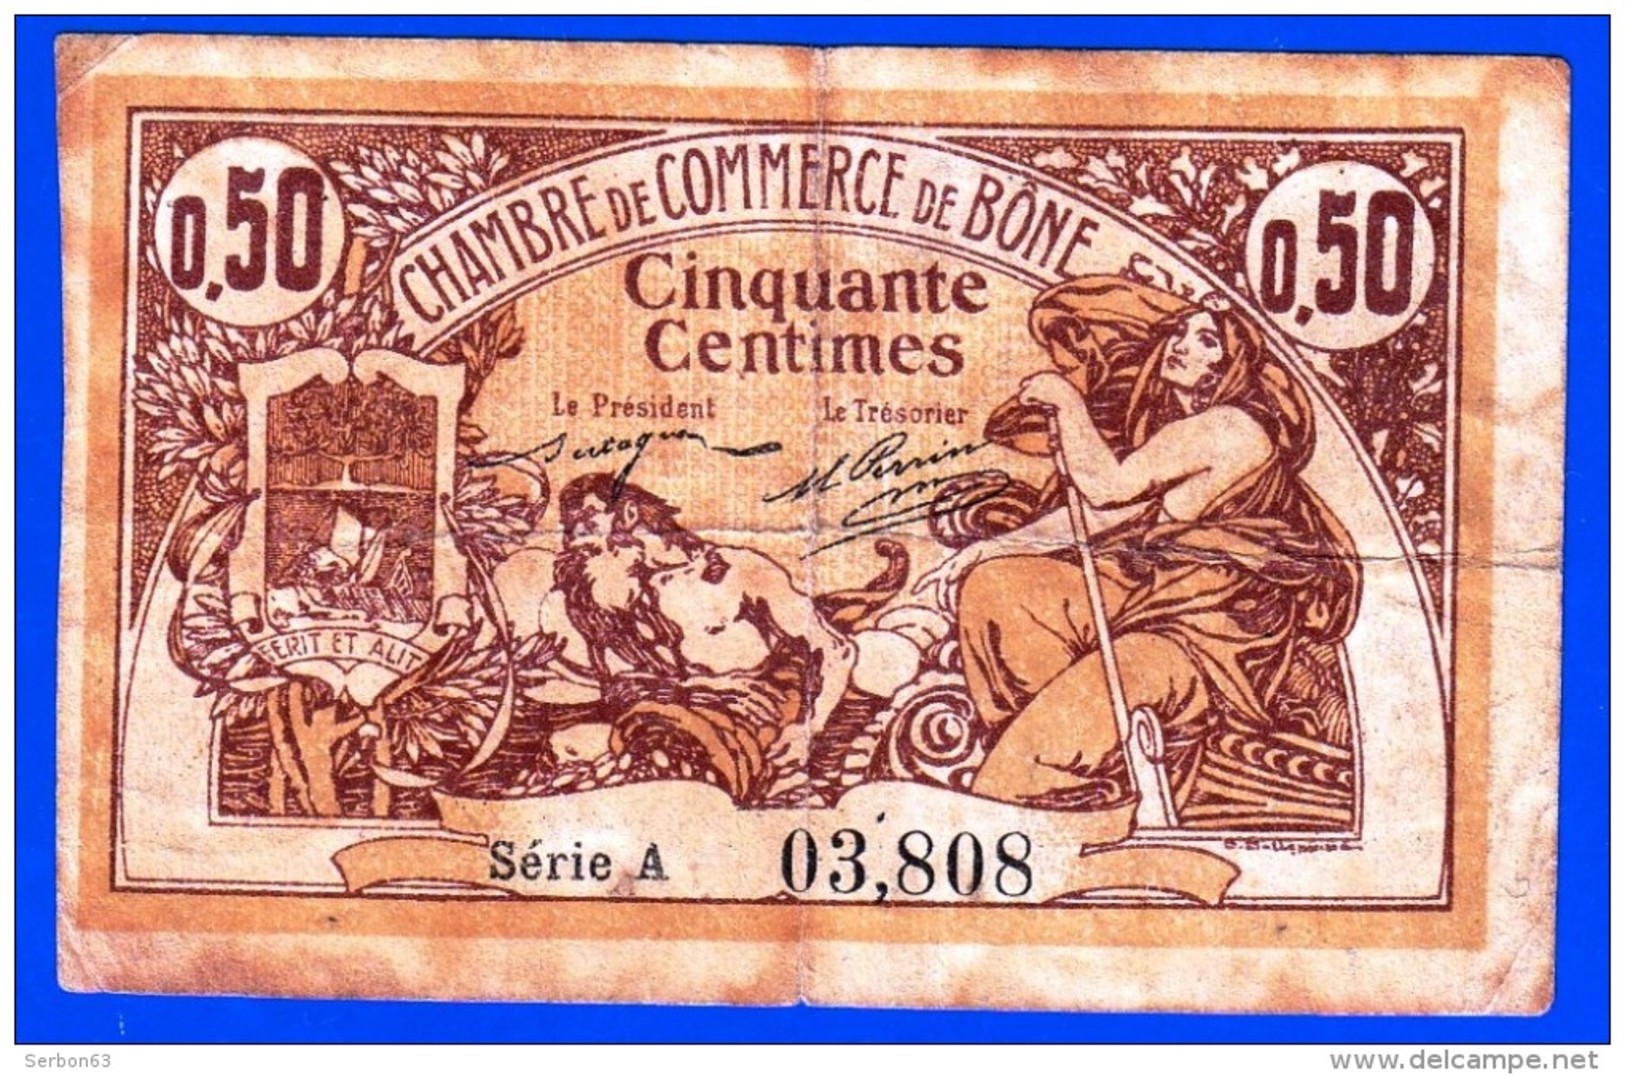 CHAMBRE DE COMMERCE DE BONE ALGERIE DELIBERATION 18 MAI 1915  50 CENTIMES SERIE A N° 03808 - NOTRE SITE Serbon63 - Algeria